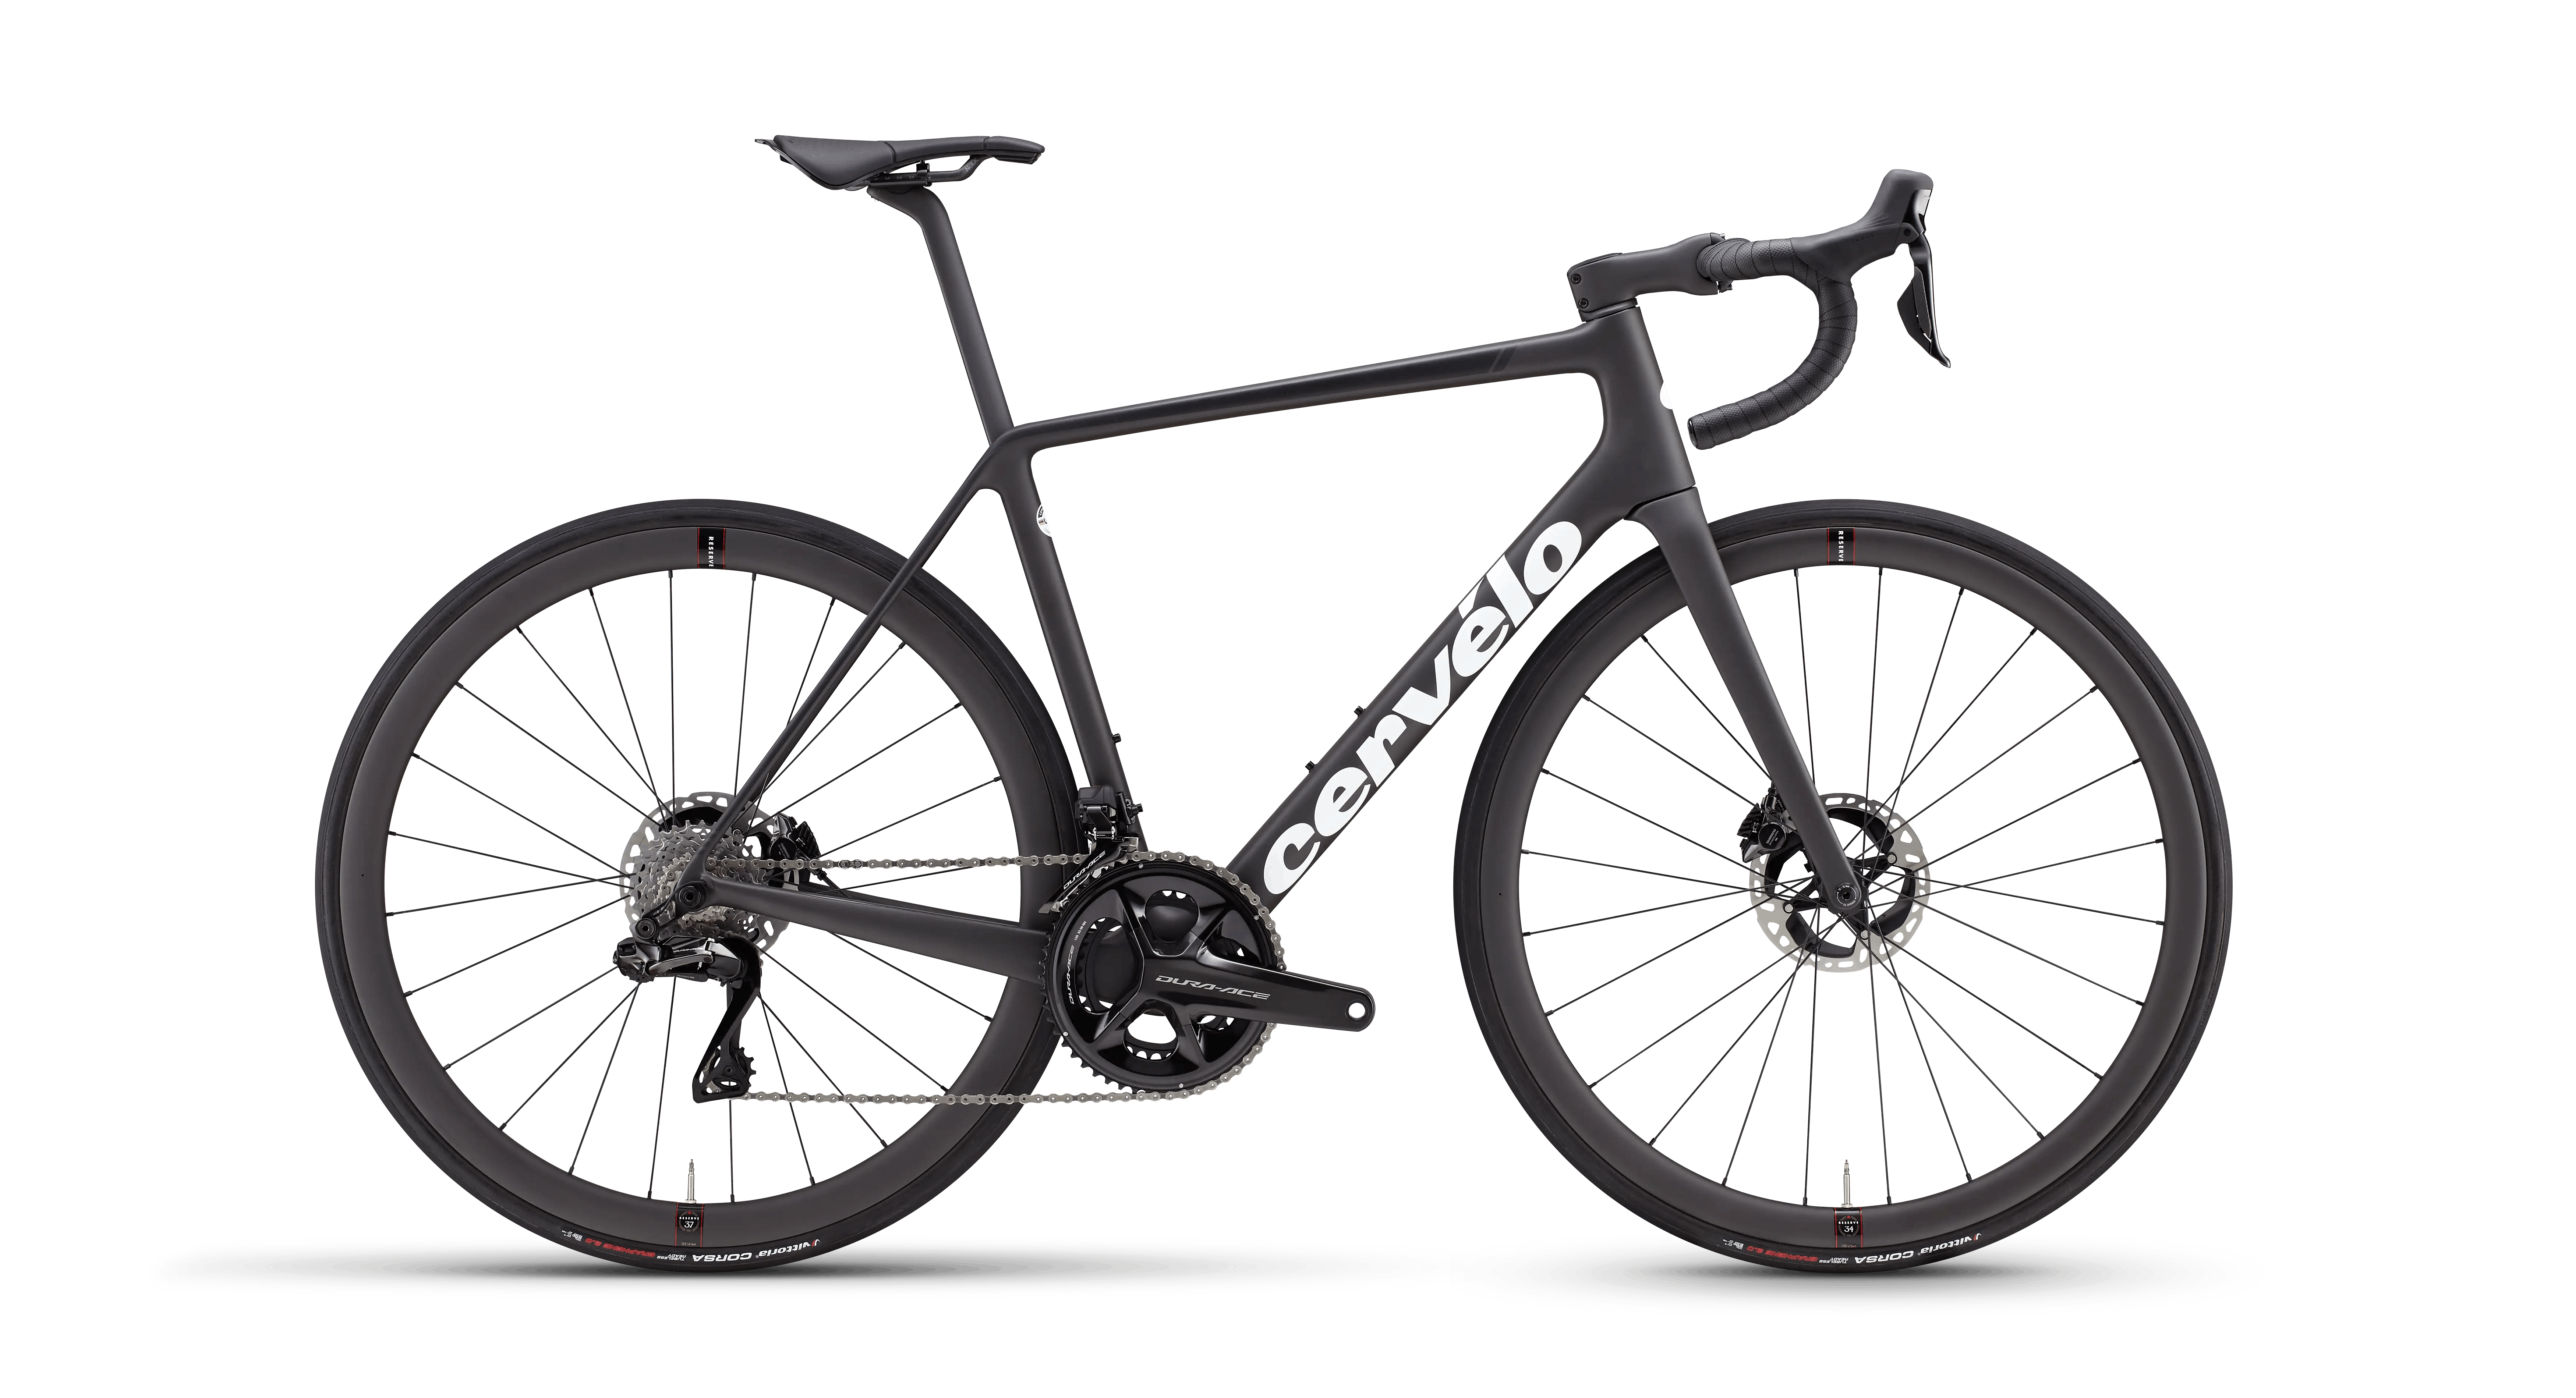 Quadro Bicicletta da corsa cervelo s5 DISC/carbon black white 51cm 56cm 2020 NUOVO 